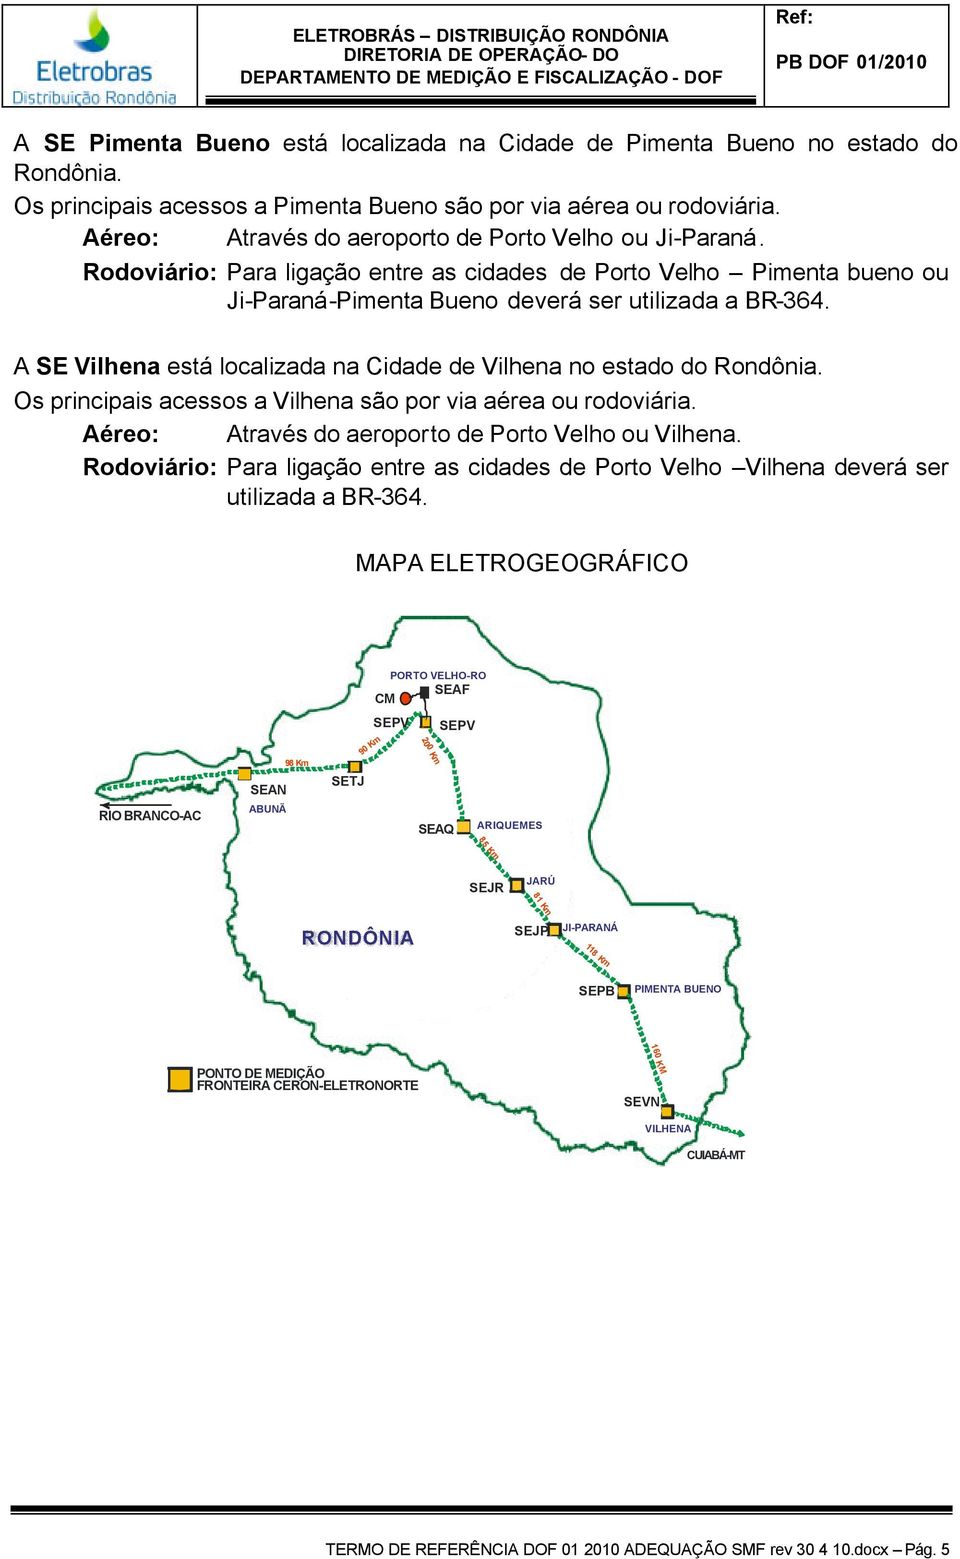 A SE Vilhena está localizada na Cidade de Vilhena no estado do Rondônia. Os principais acessos a Vilhena são por via aérea ou rodoviária. Aéreo: Através do aeroporto de Porto Velho ou Vilhena.